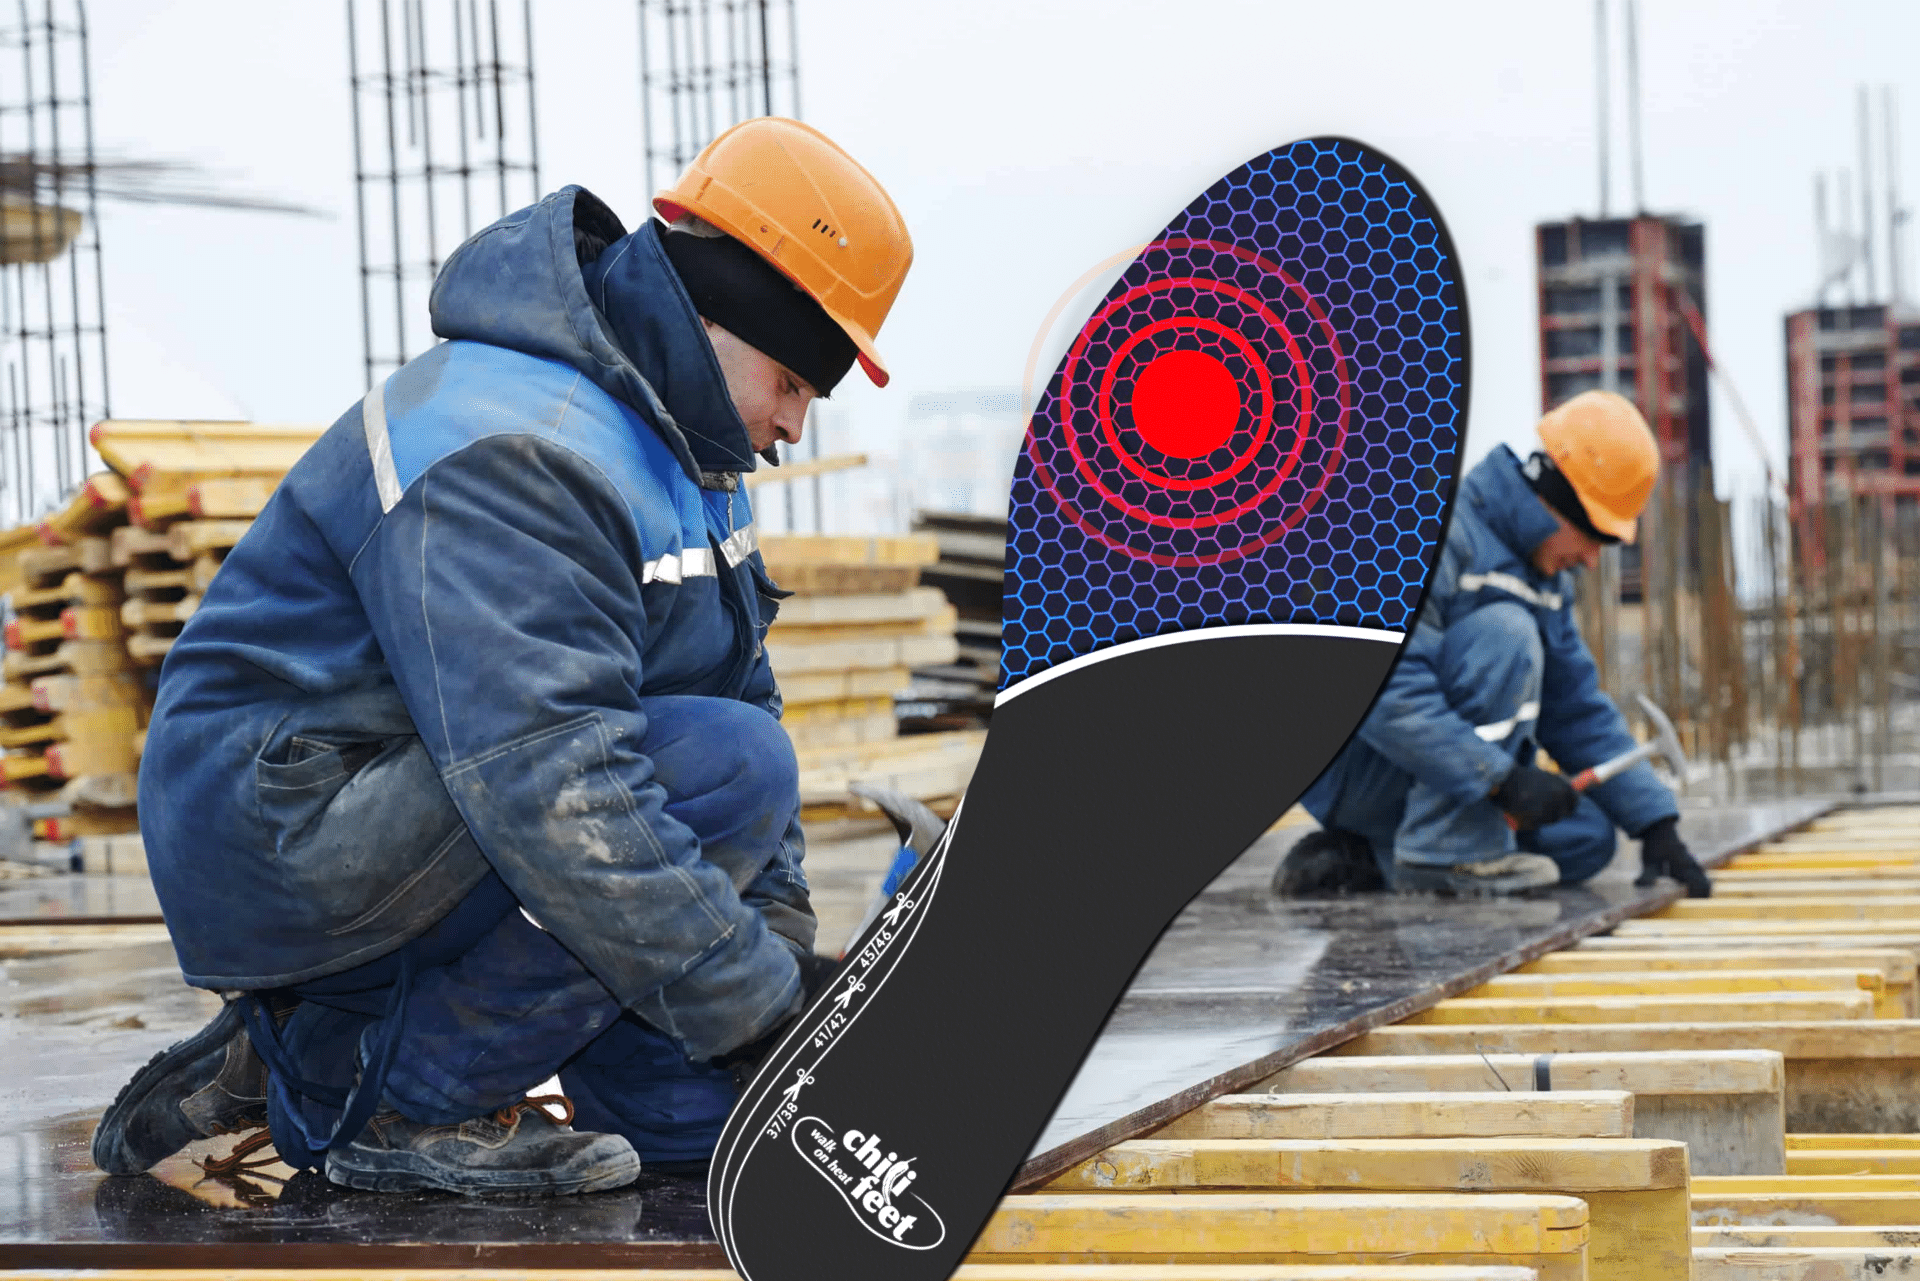 Titelbild eines Bauarbeiters im Winter mit der chili-feet Wärmesohle eingeblendet